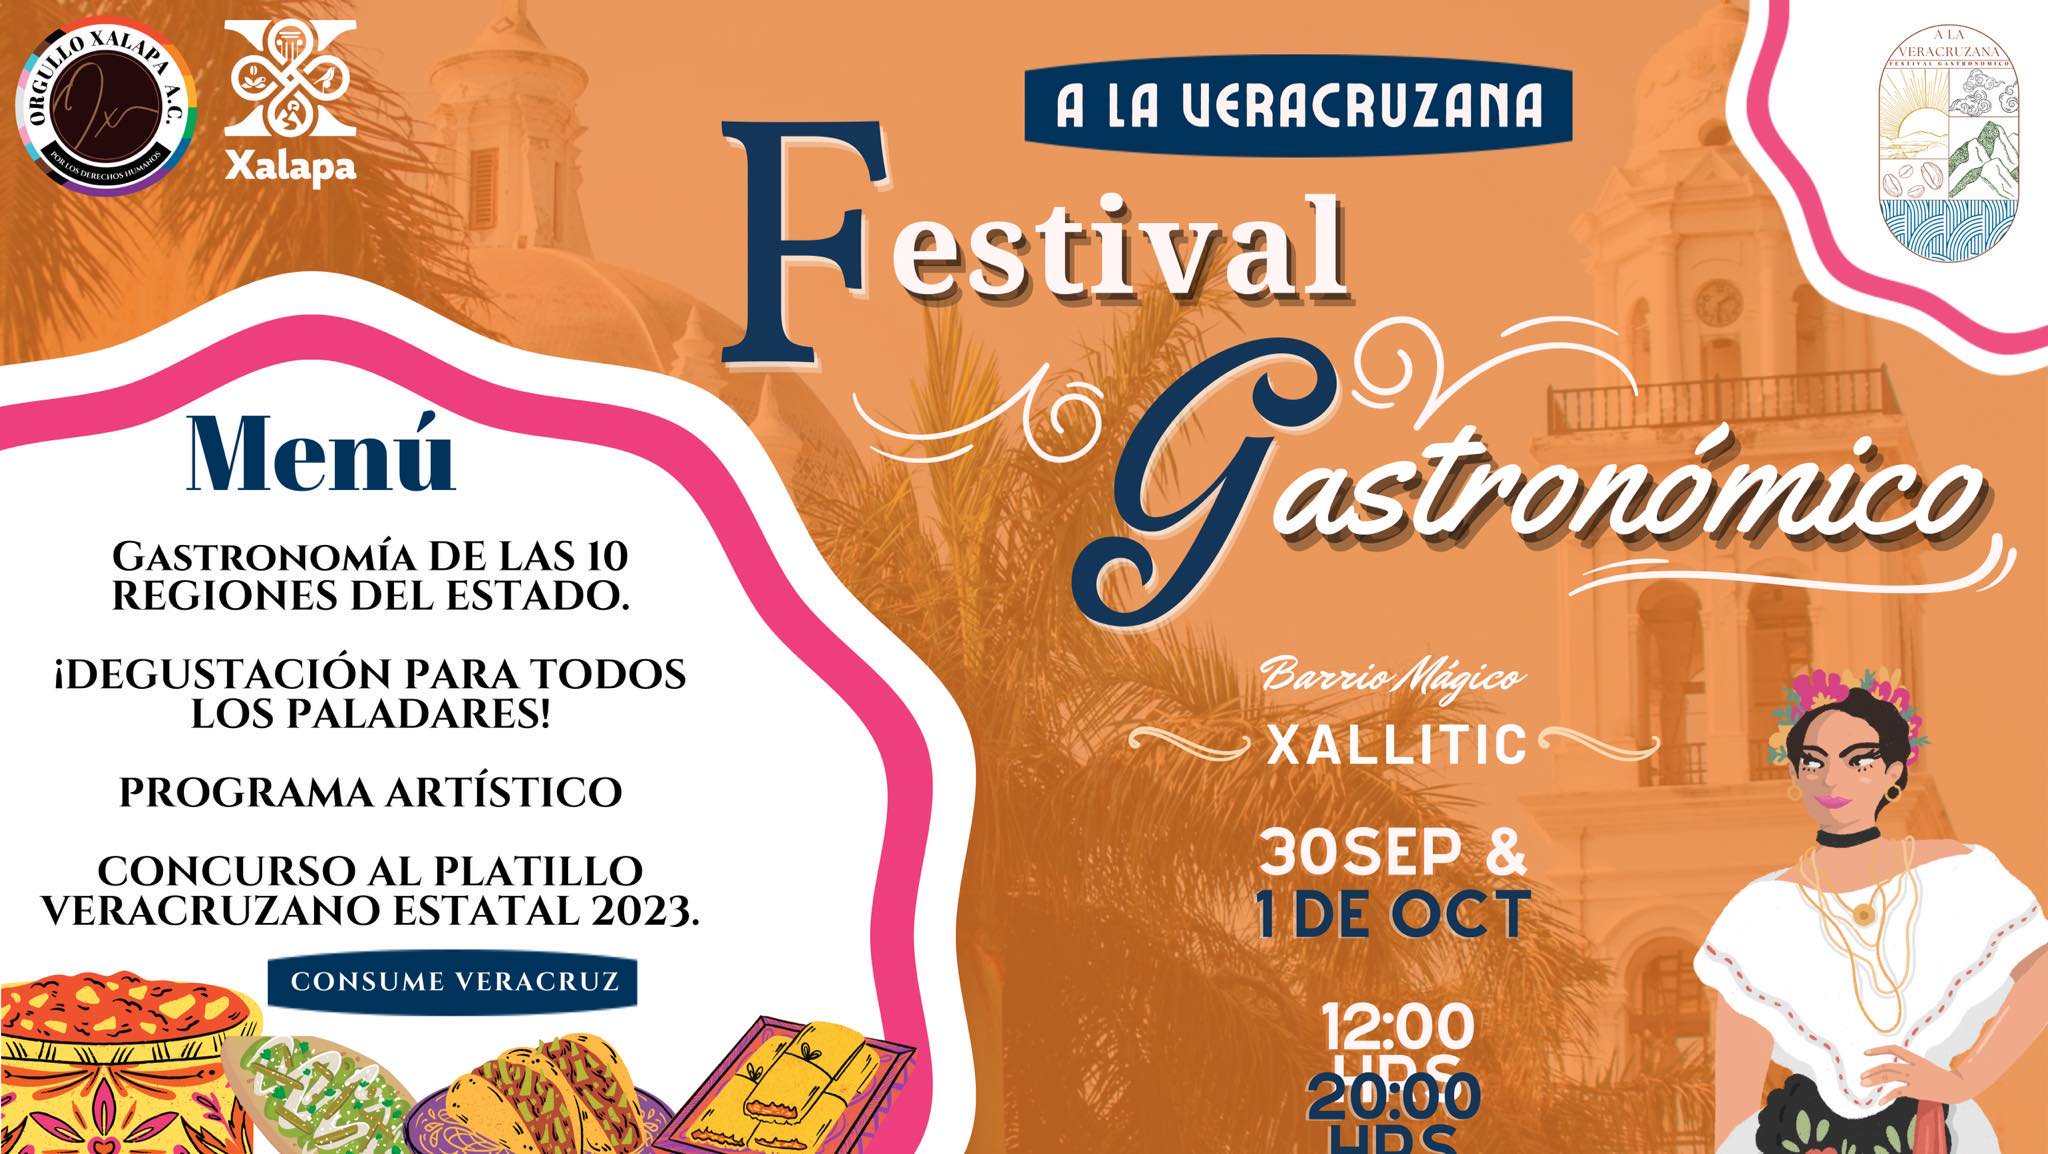 Orgullo Xalapa invita a participar en el Festival Gastronómico A la Veracruzana